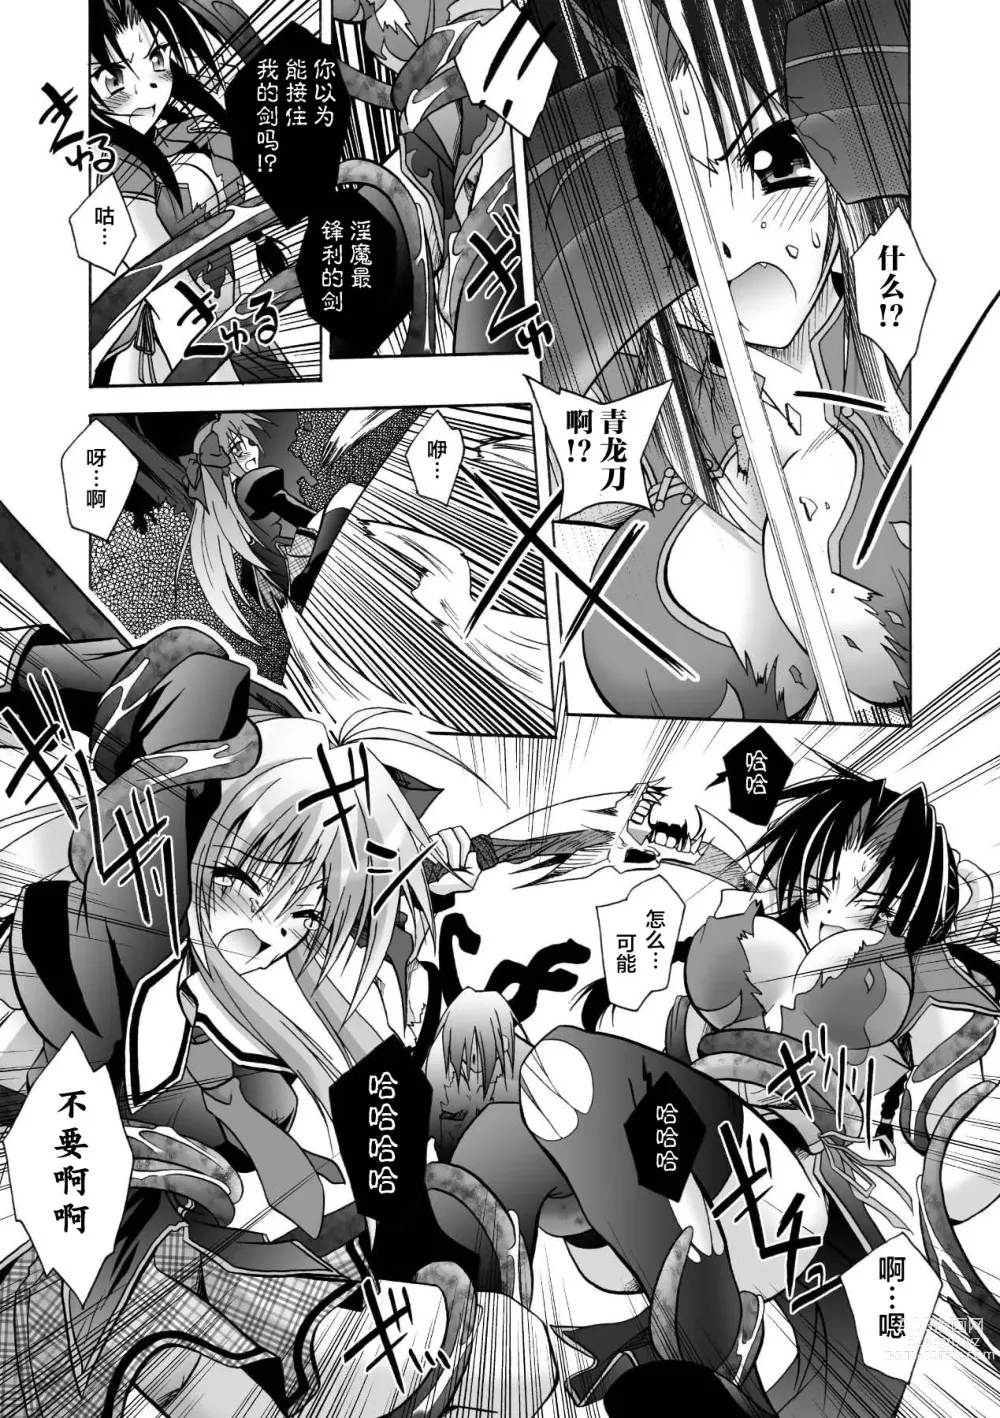 Page 11 of manga Matantei Toudou Shizuka no Inyou Jikenbo